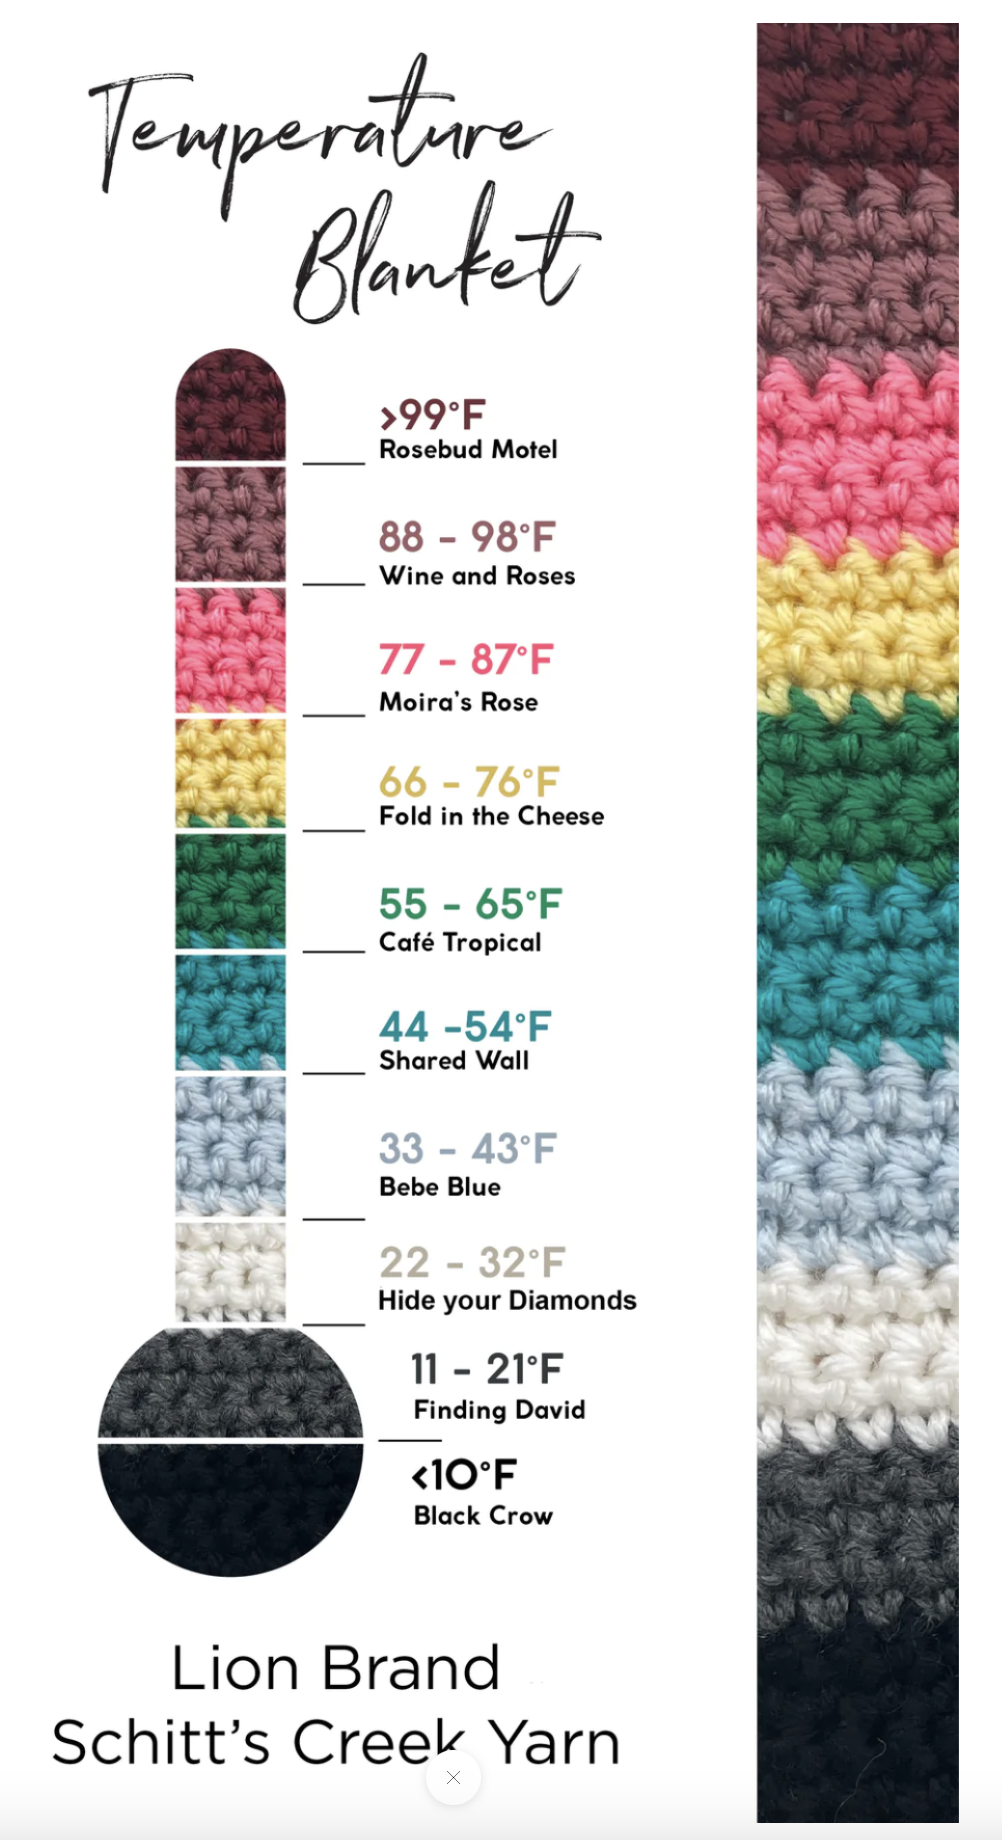 lion brand crochet temperature blanket kit